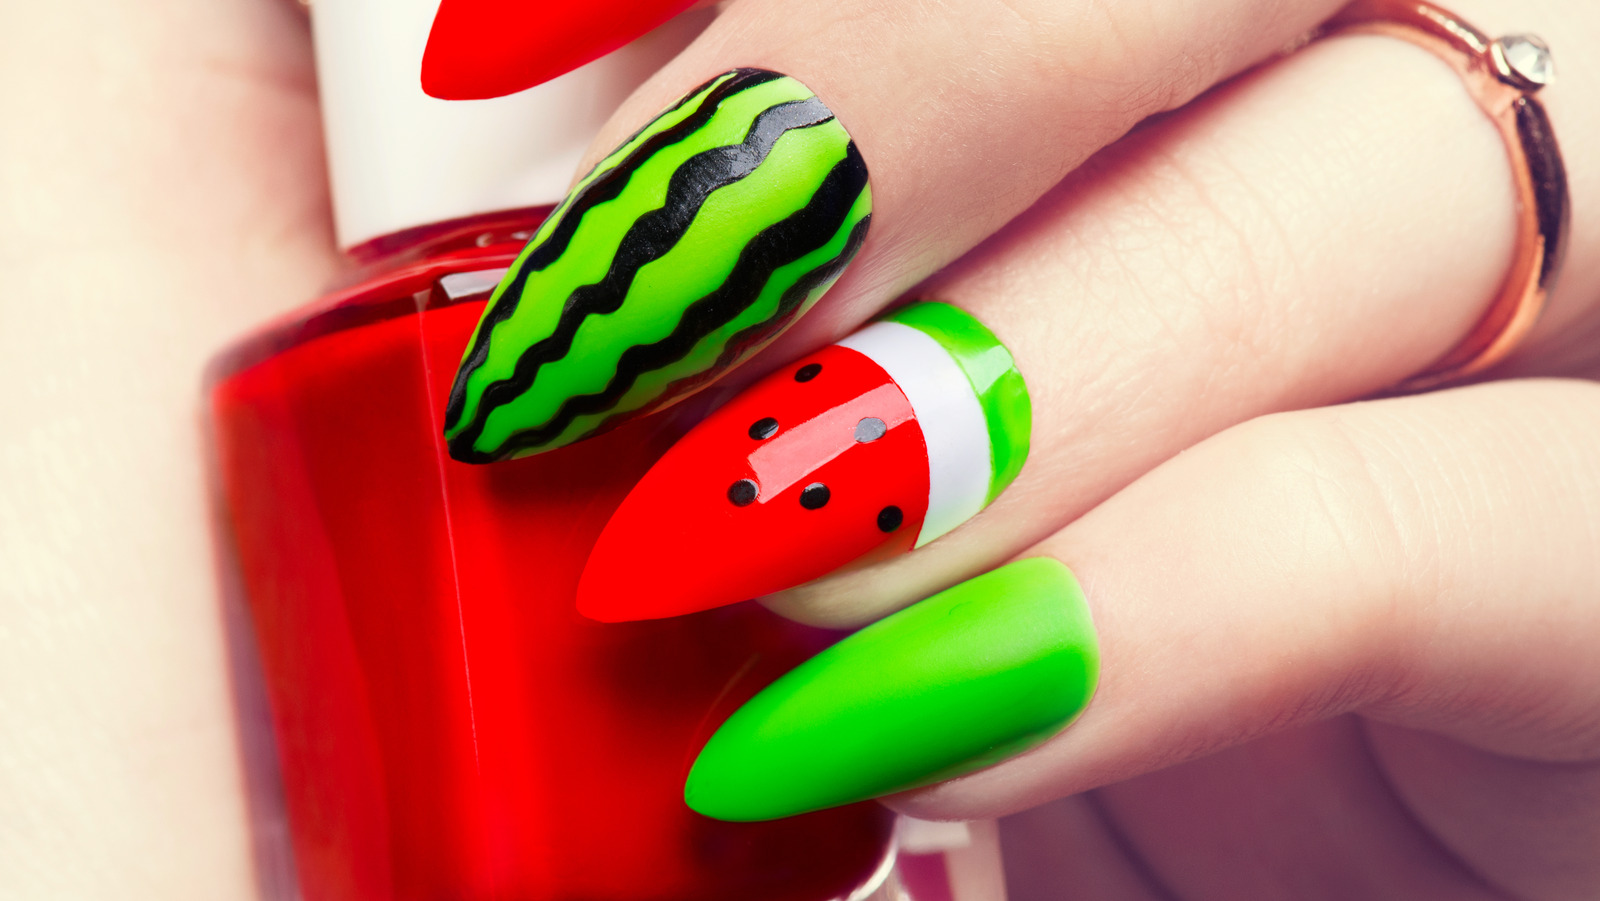 8. Watermelon Stiletto Nails for a Fun Summer Manicure - wide 2